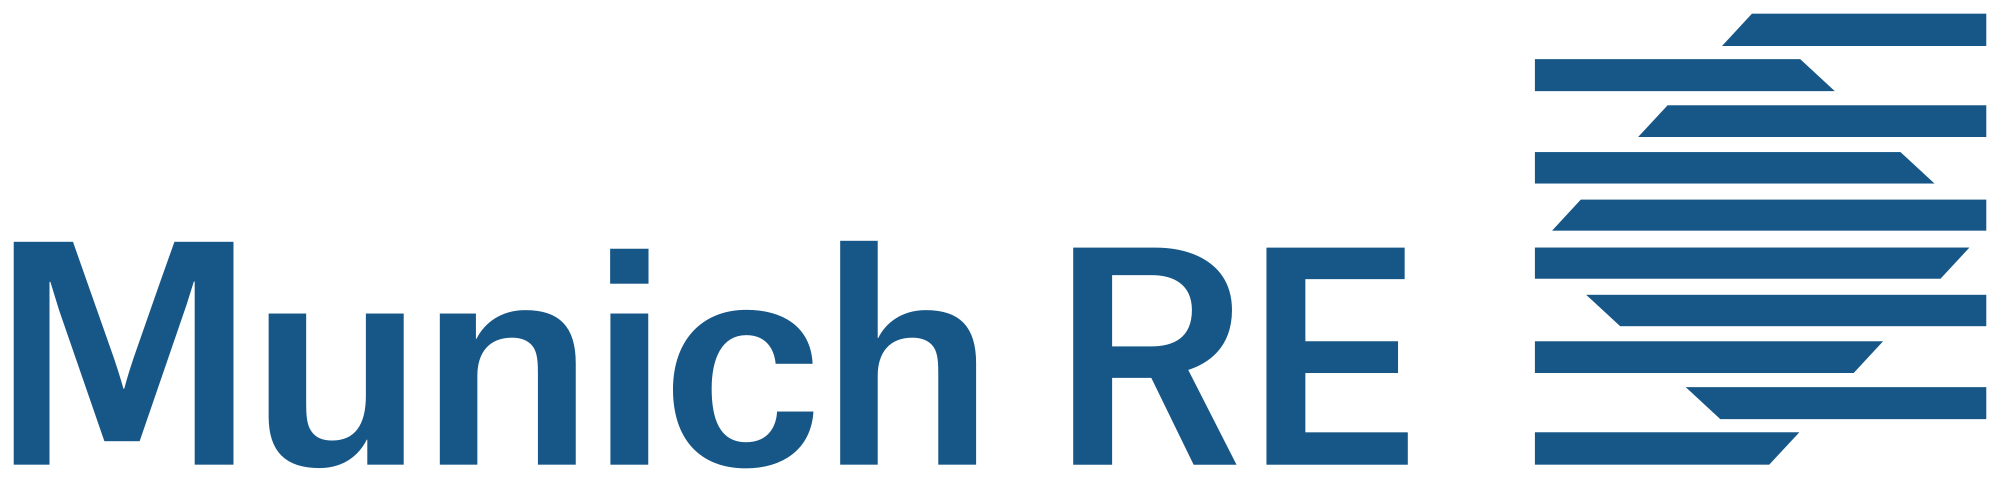 Münchener Rückversicherungs-Gesellschaft Aktiengesellschaft in München Logo